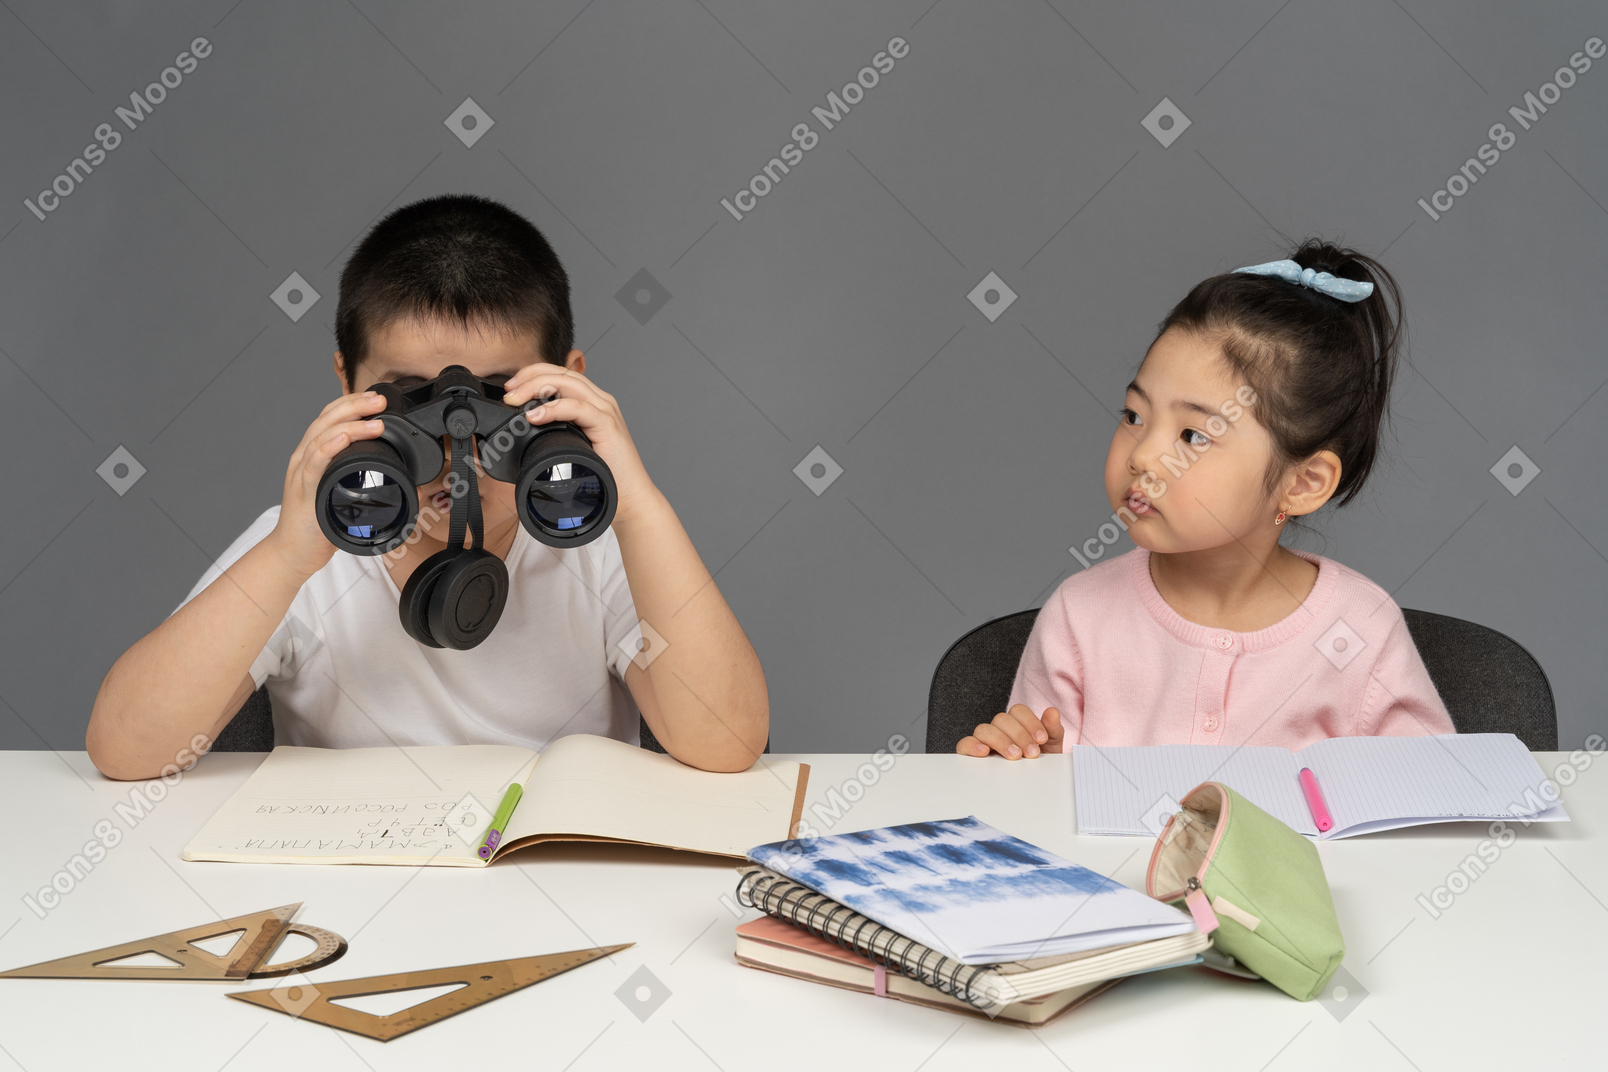 Boy looking through binoculars next to girl